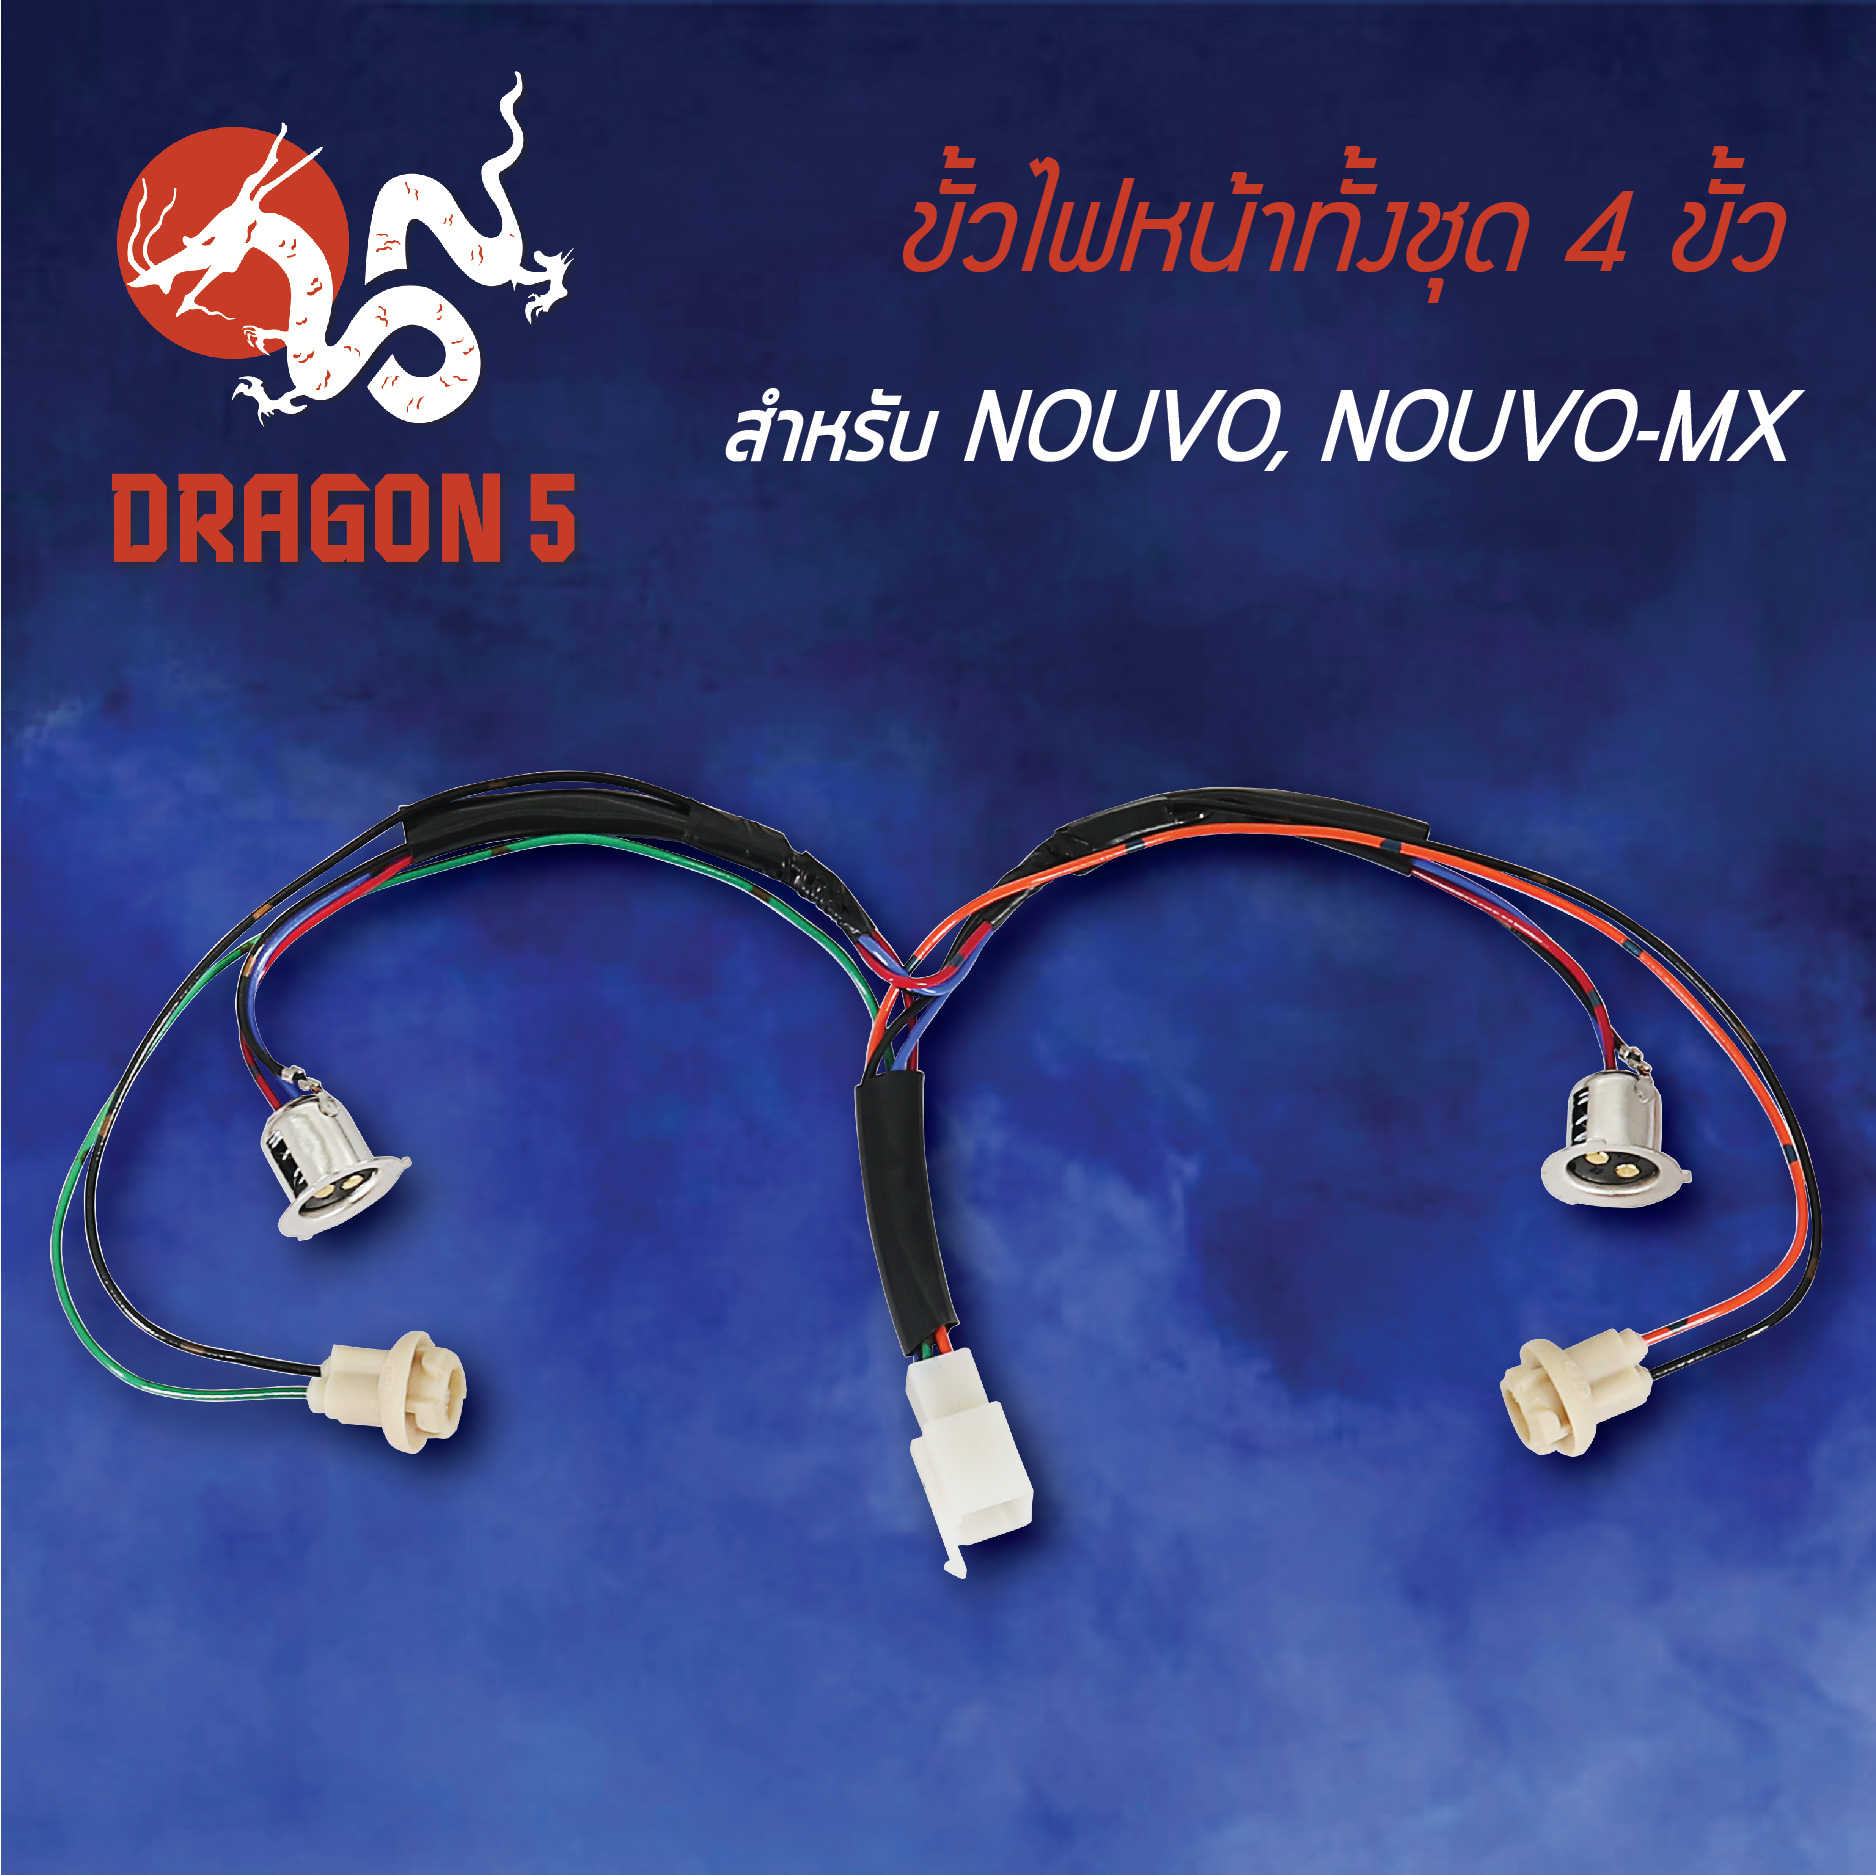 ขั้วไฟหน้า NOUVO-MX,นูโวMX, ขั้วไฟหน้าทั้งชุด 4 ขั้ว NOUVO-MX 1310-226-00 HMA